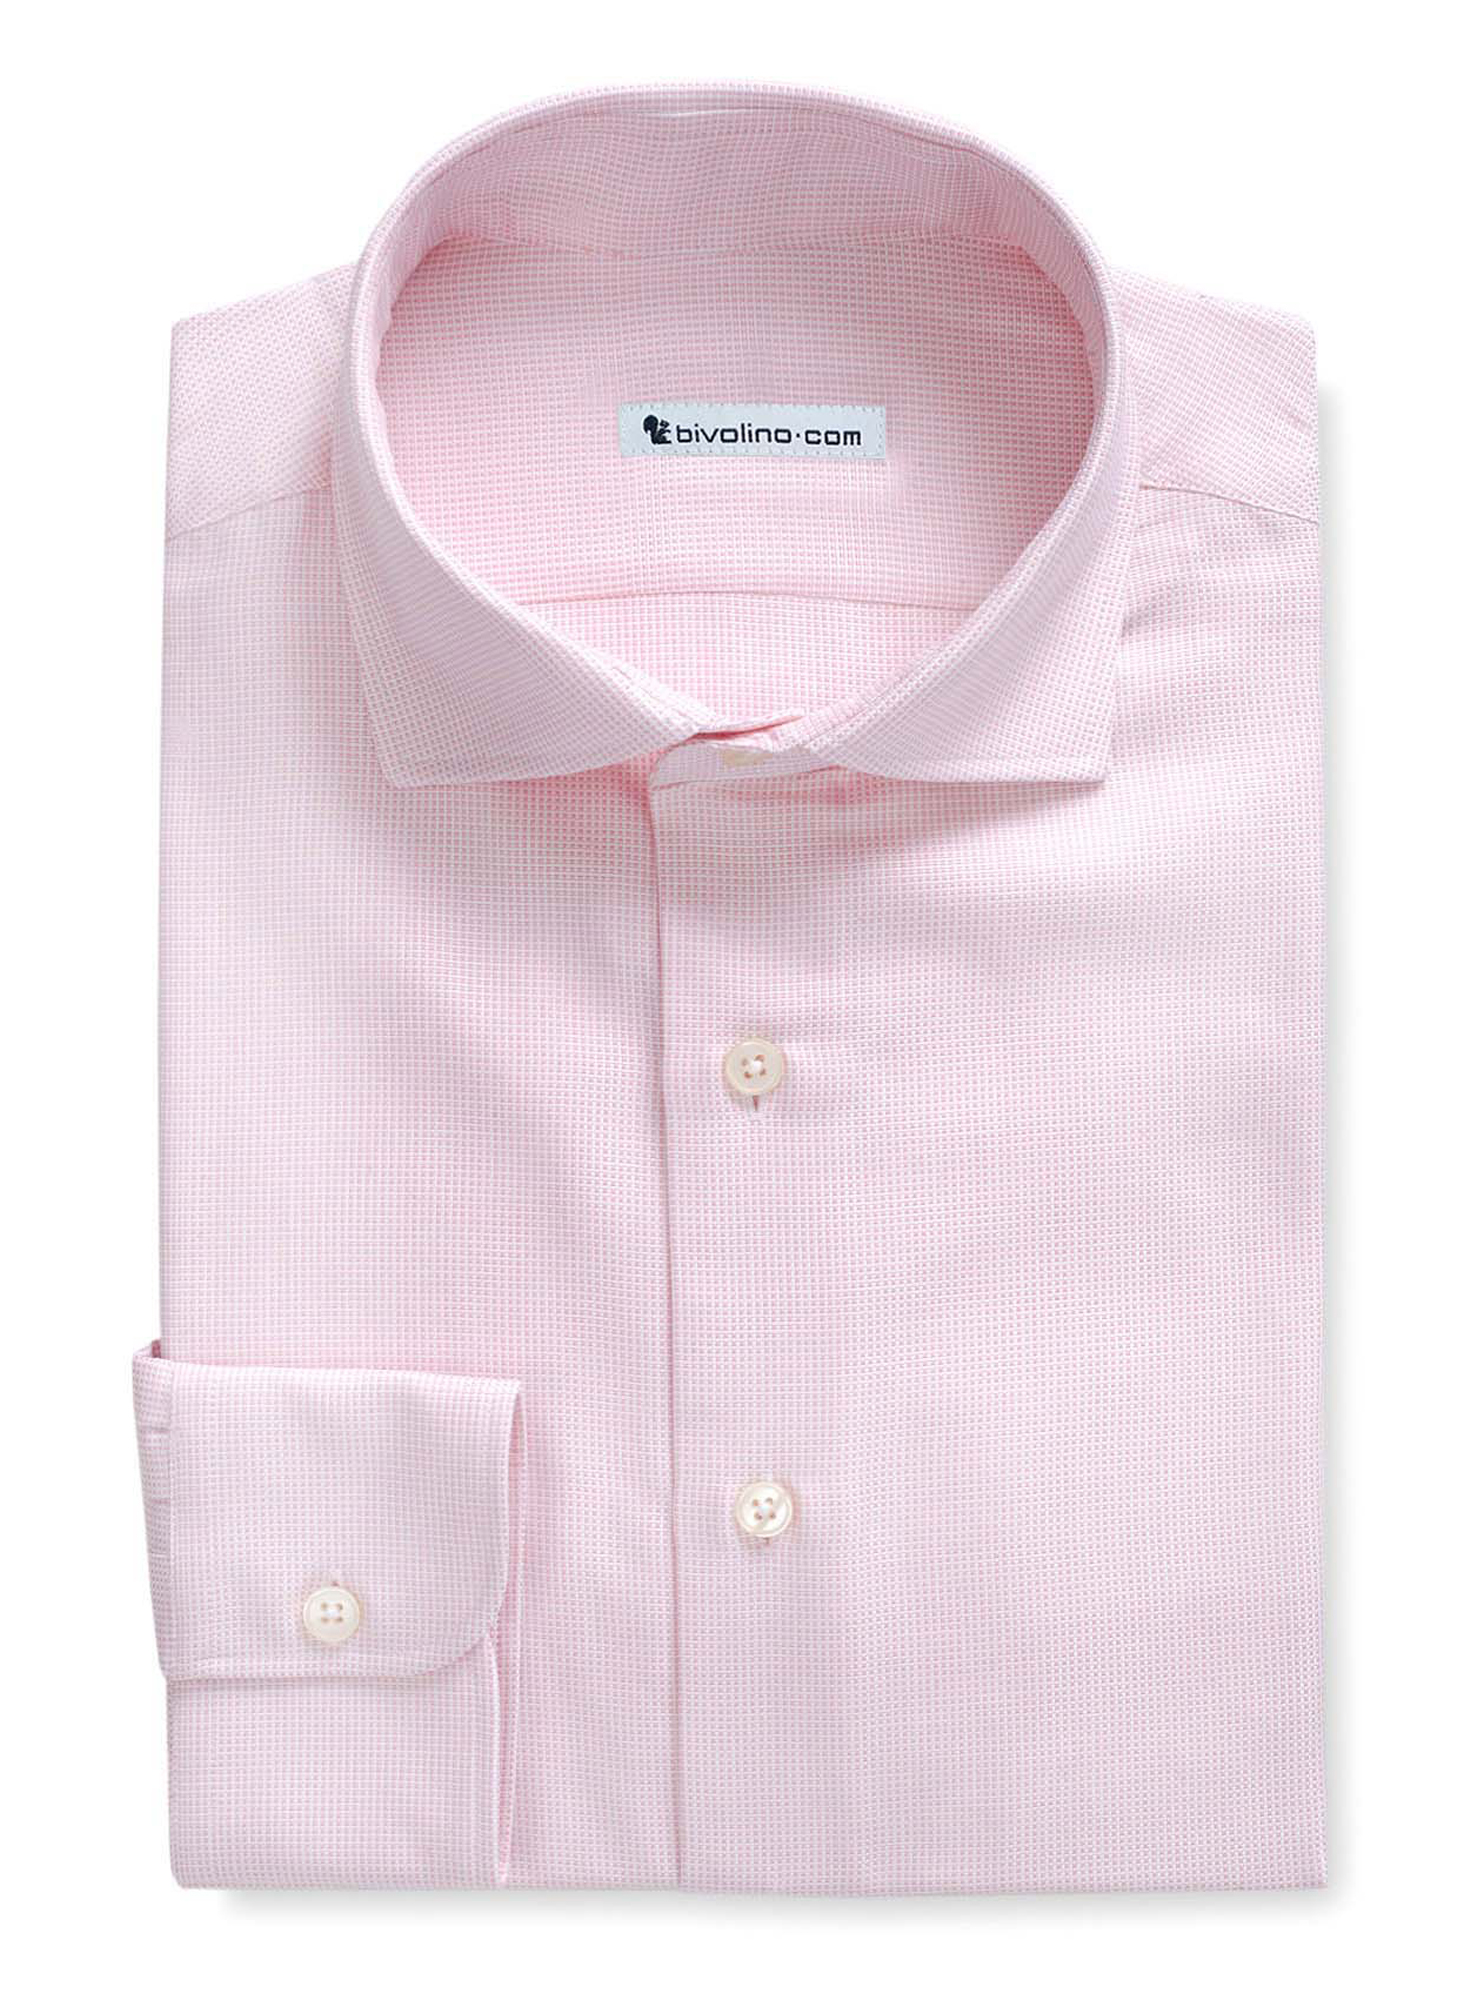 PANIMANO - Oxford effen roze overhemd - ROYAL PANAMA 2